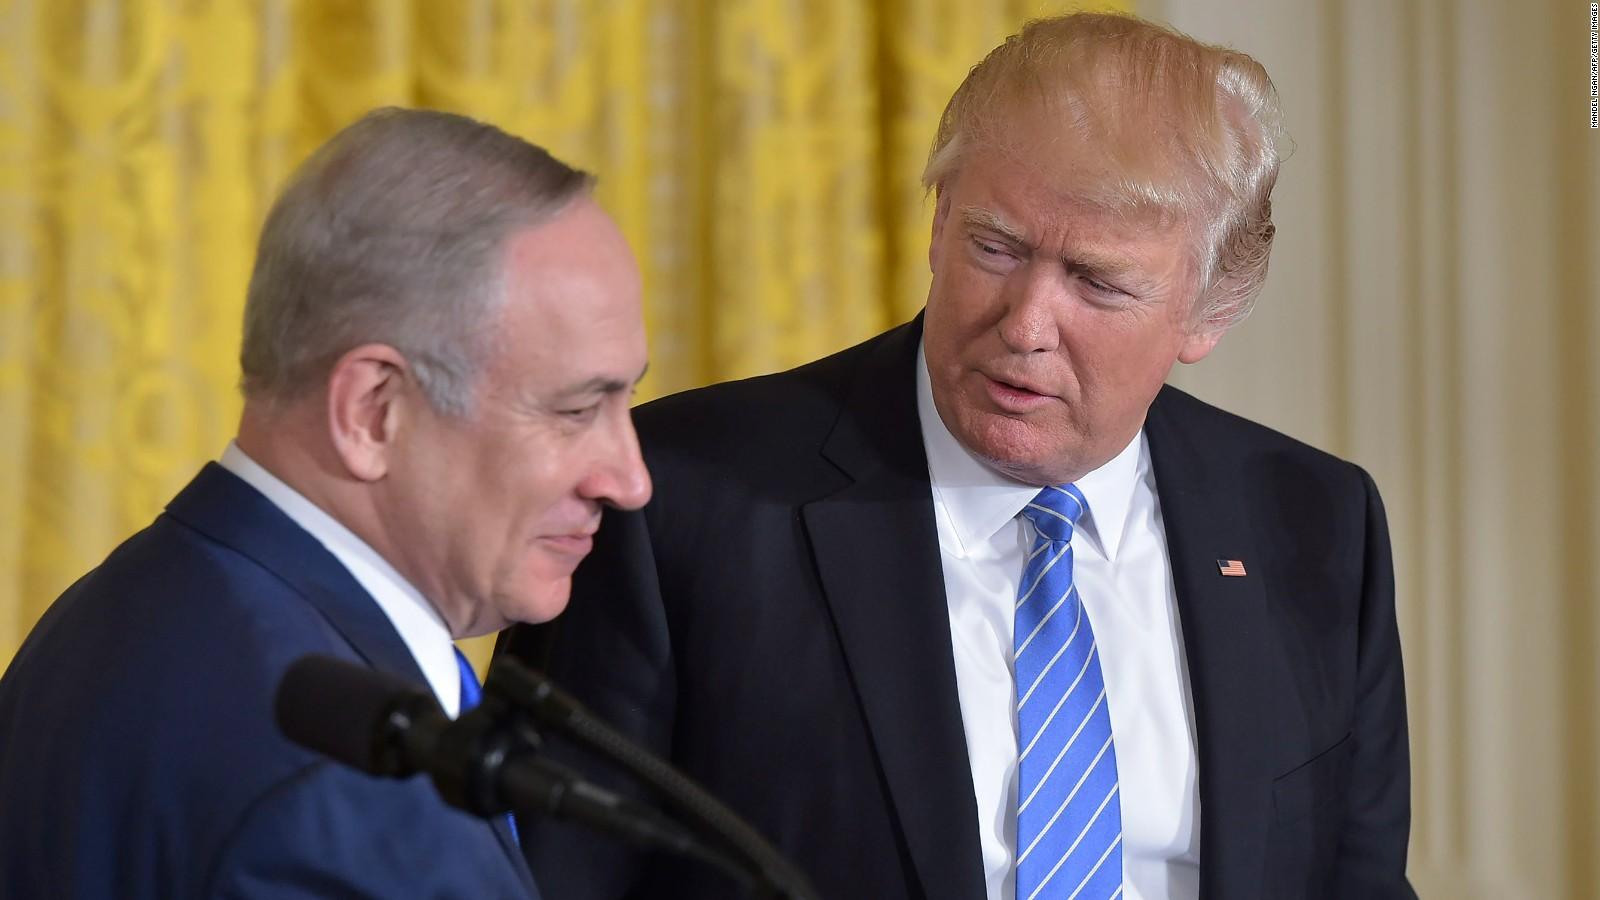 حديث ترامب في “إسرائيل” عن “فرصة السلام النادرة”.. الأسباب والدلالات